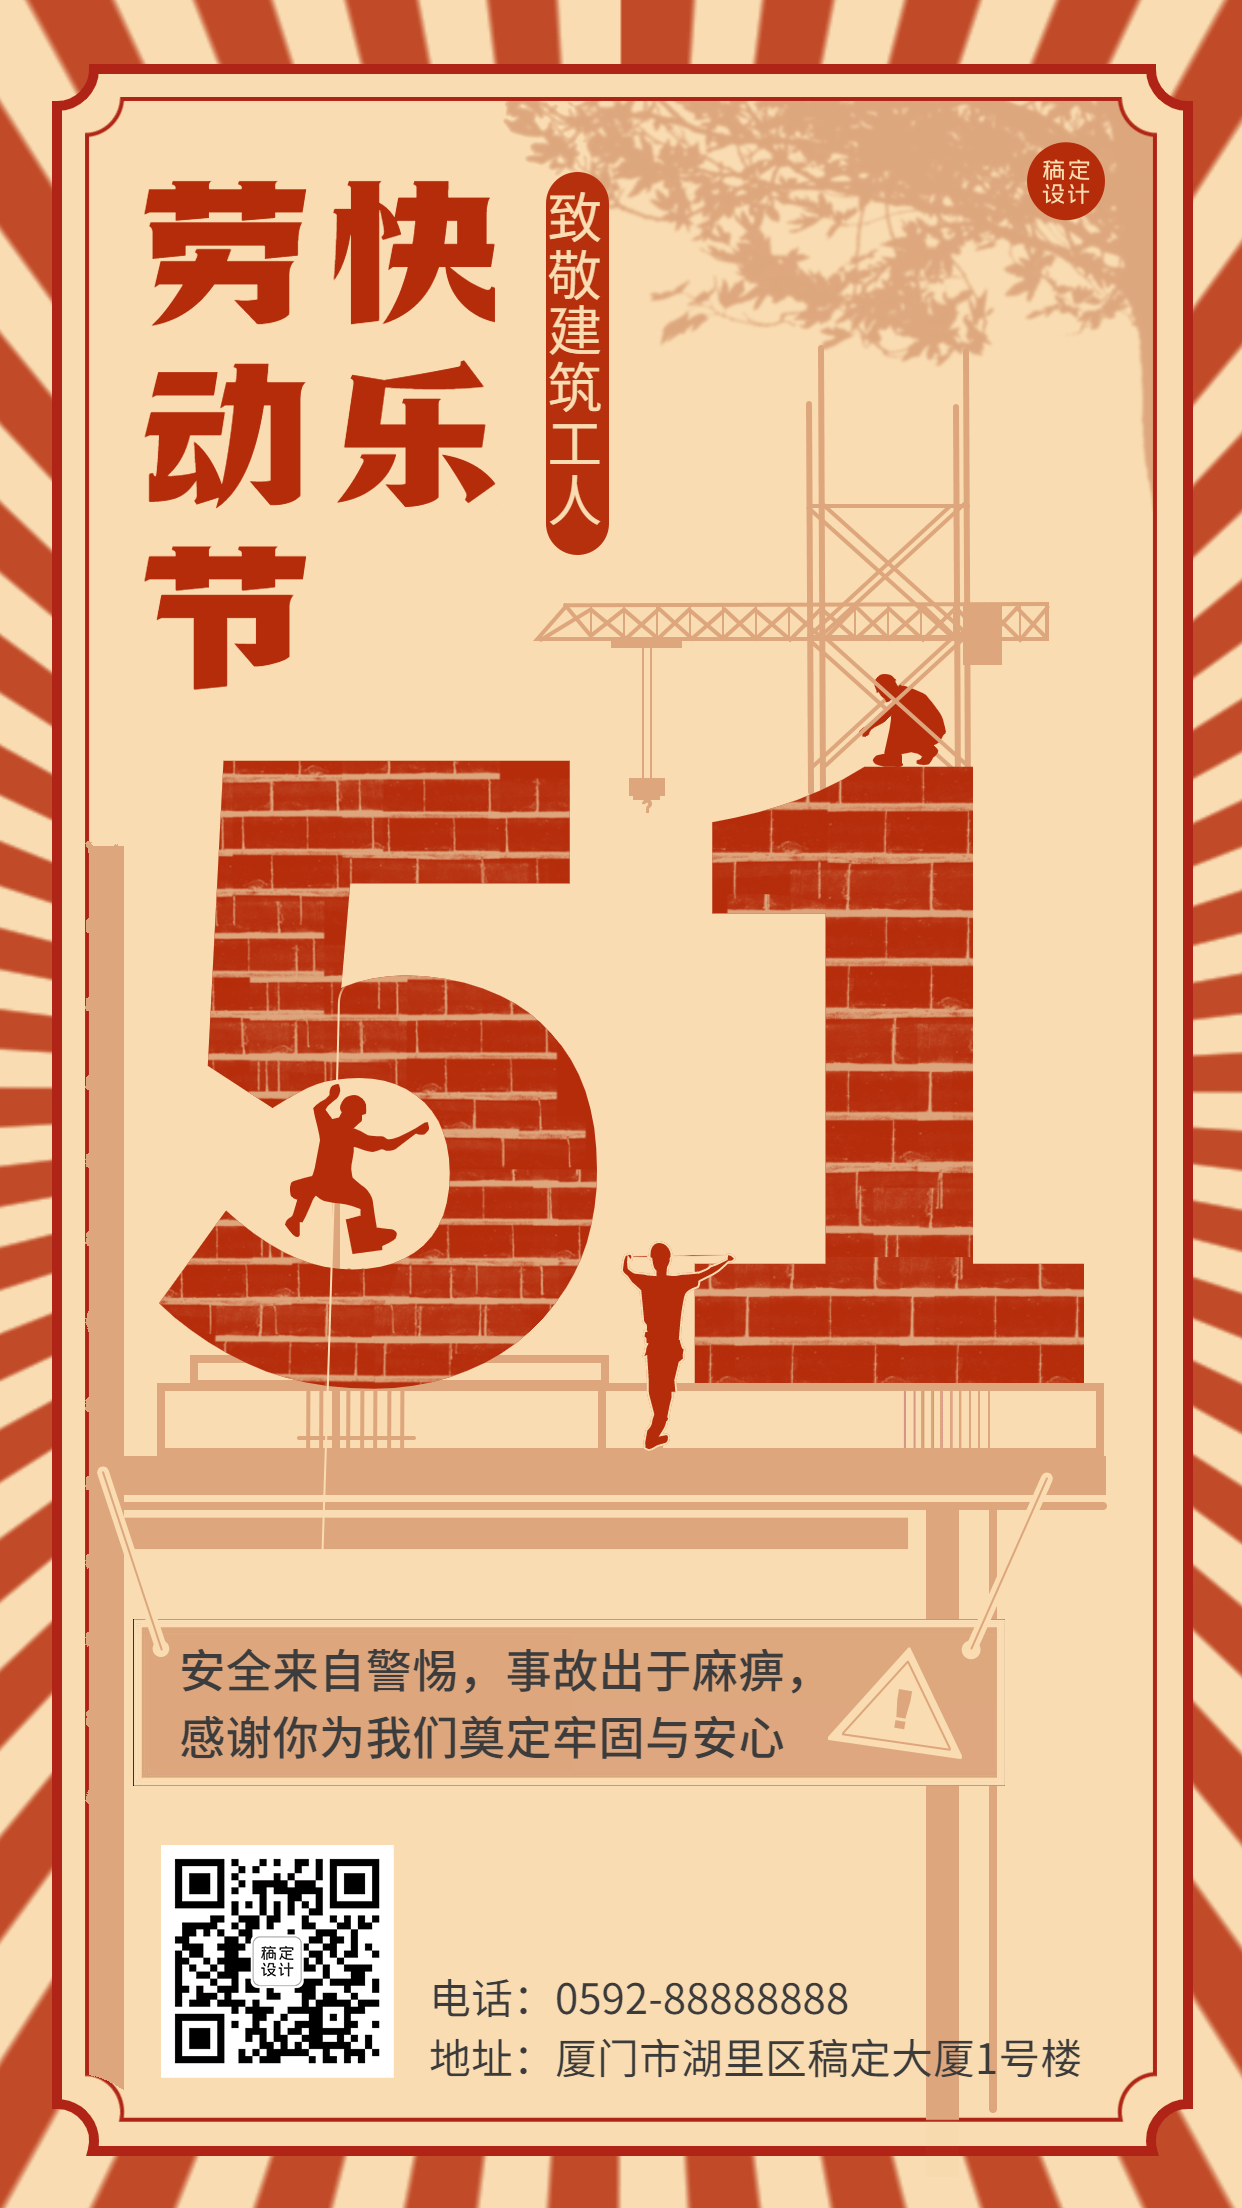 劳动节节日祝福致敬劳动者插画手机海报